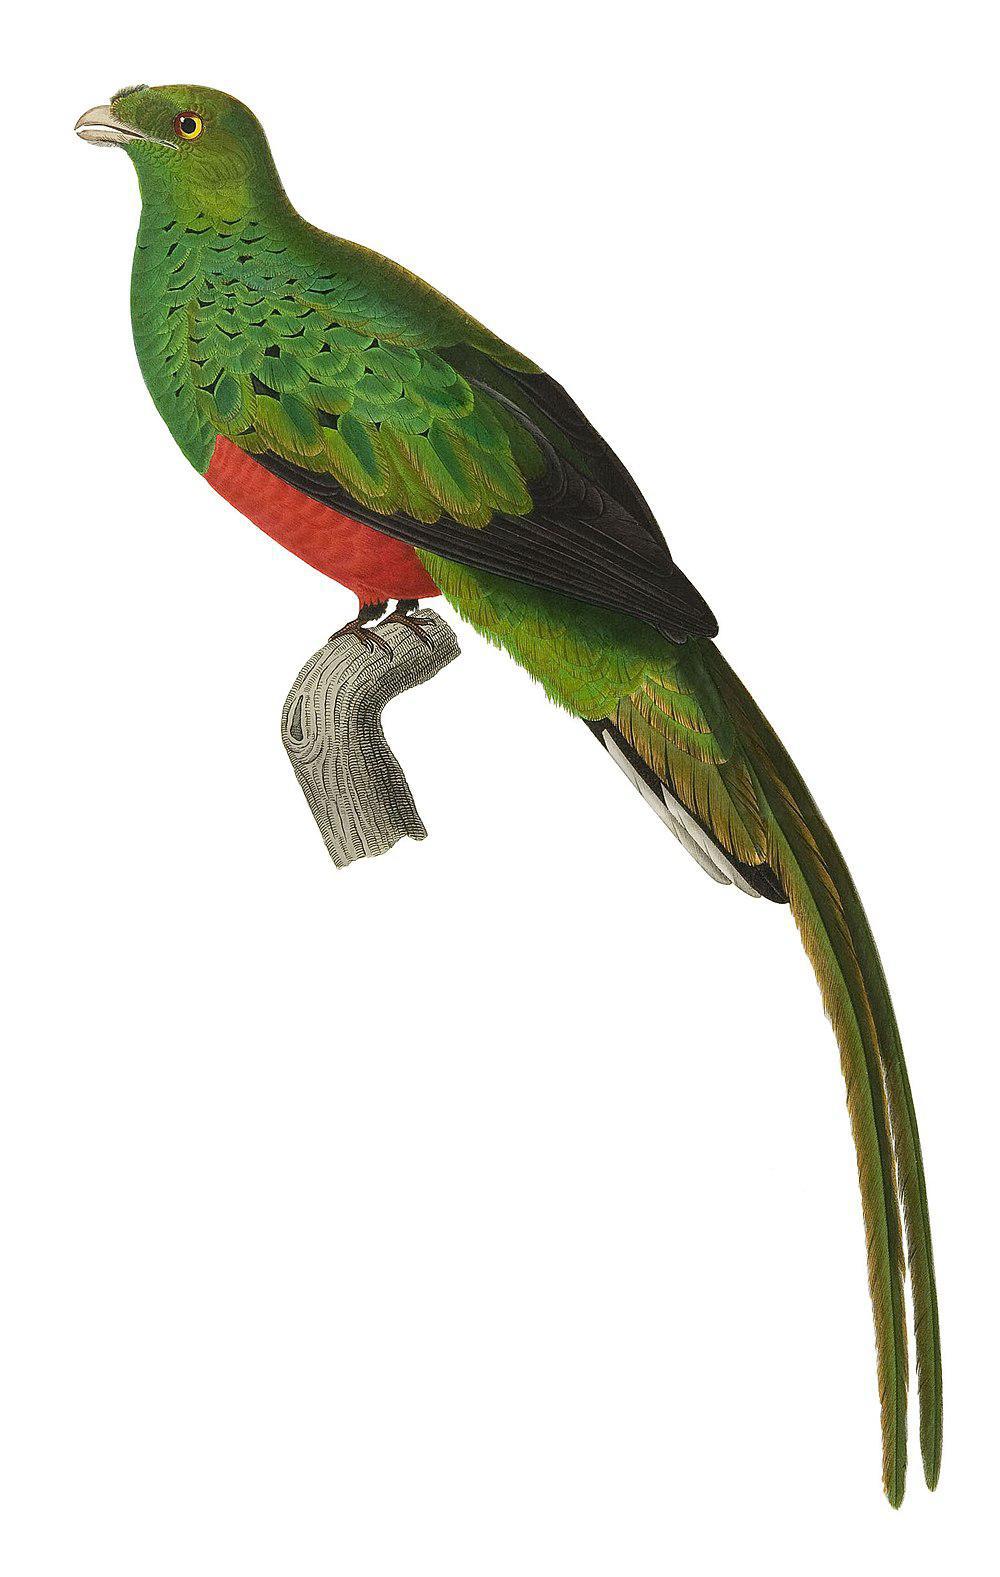 五彩绿咬鹃 / Pavonine Quetzal / Pharomachrus pavoninus